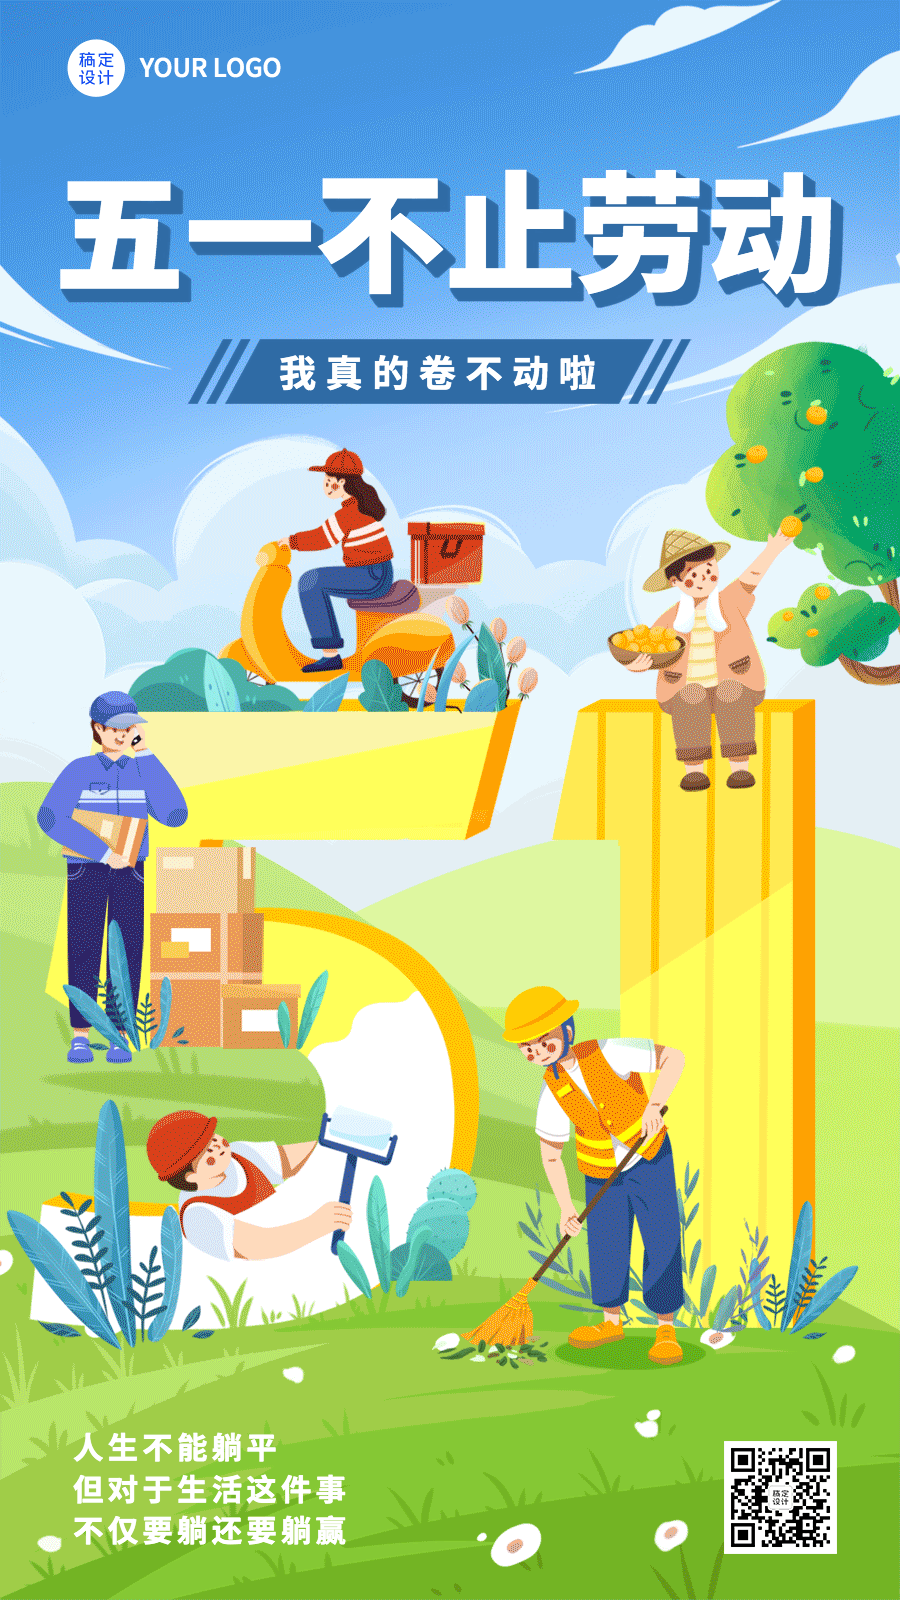 劳动节节日祝福51数字符号插画动态海报